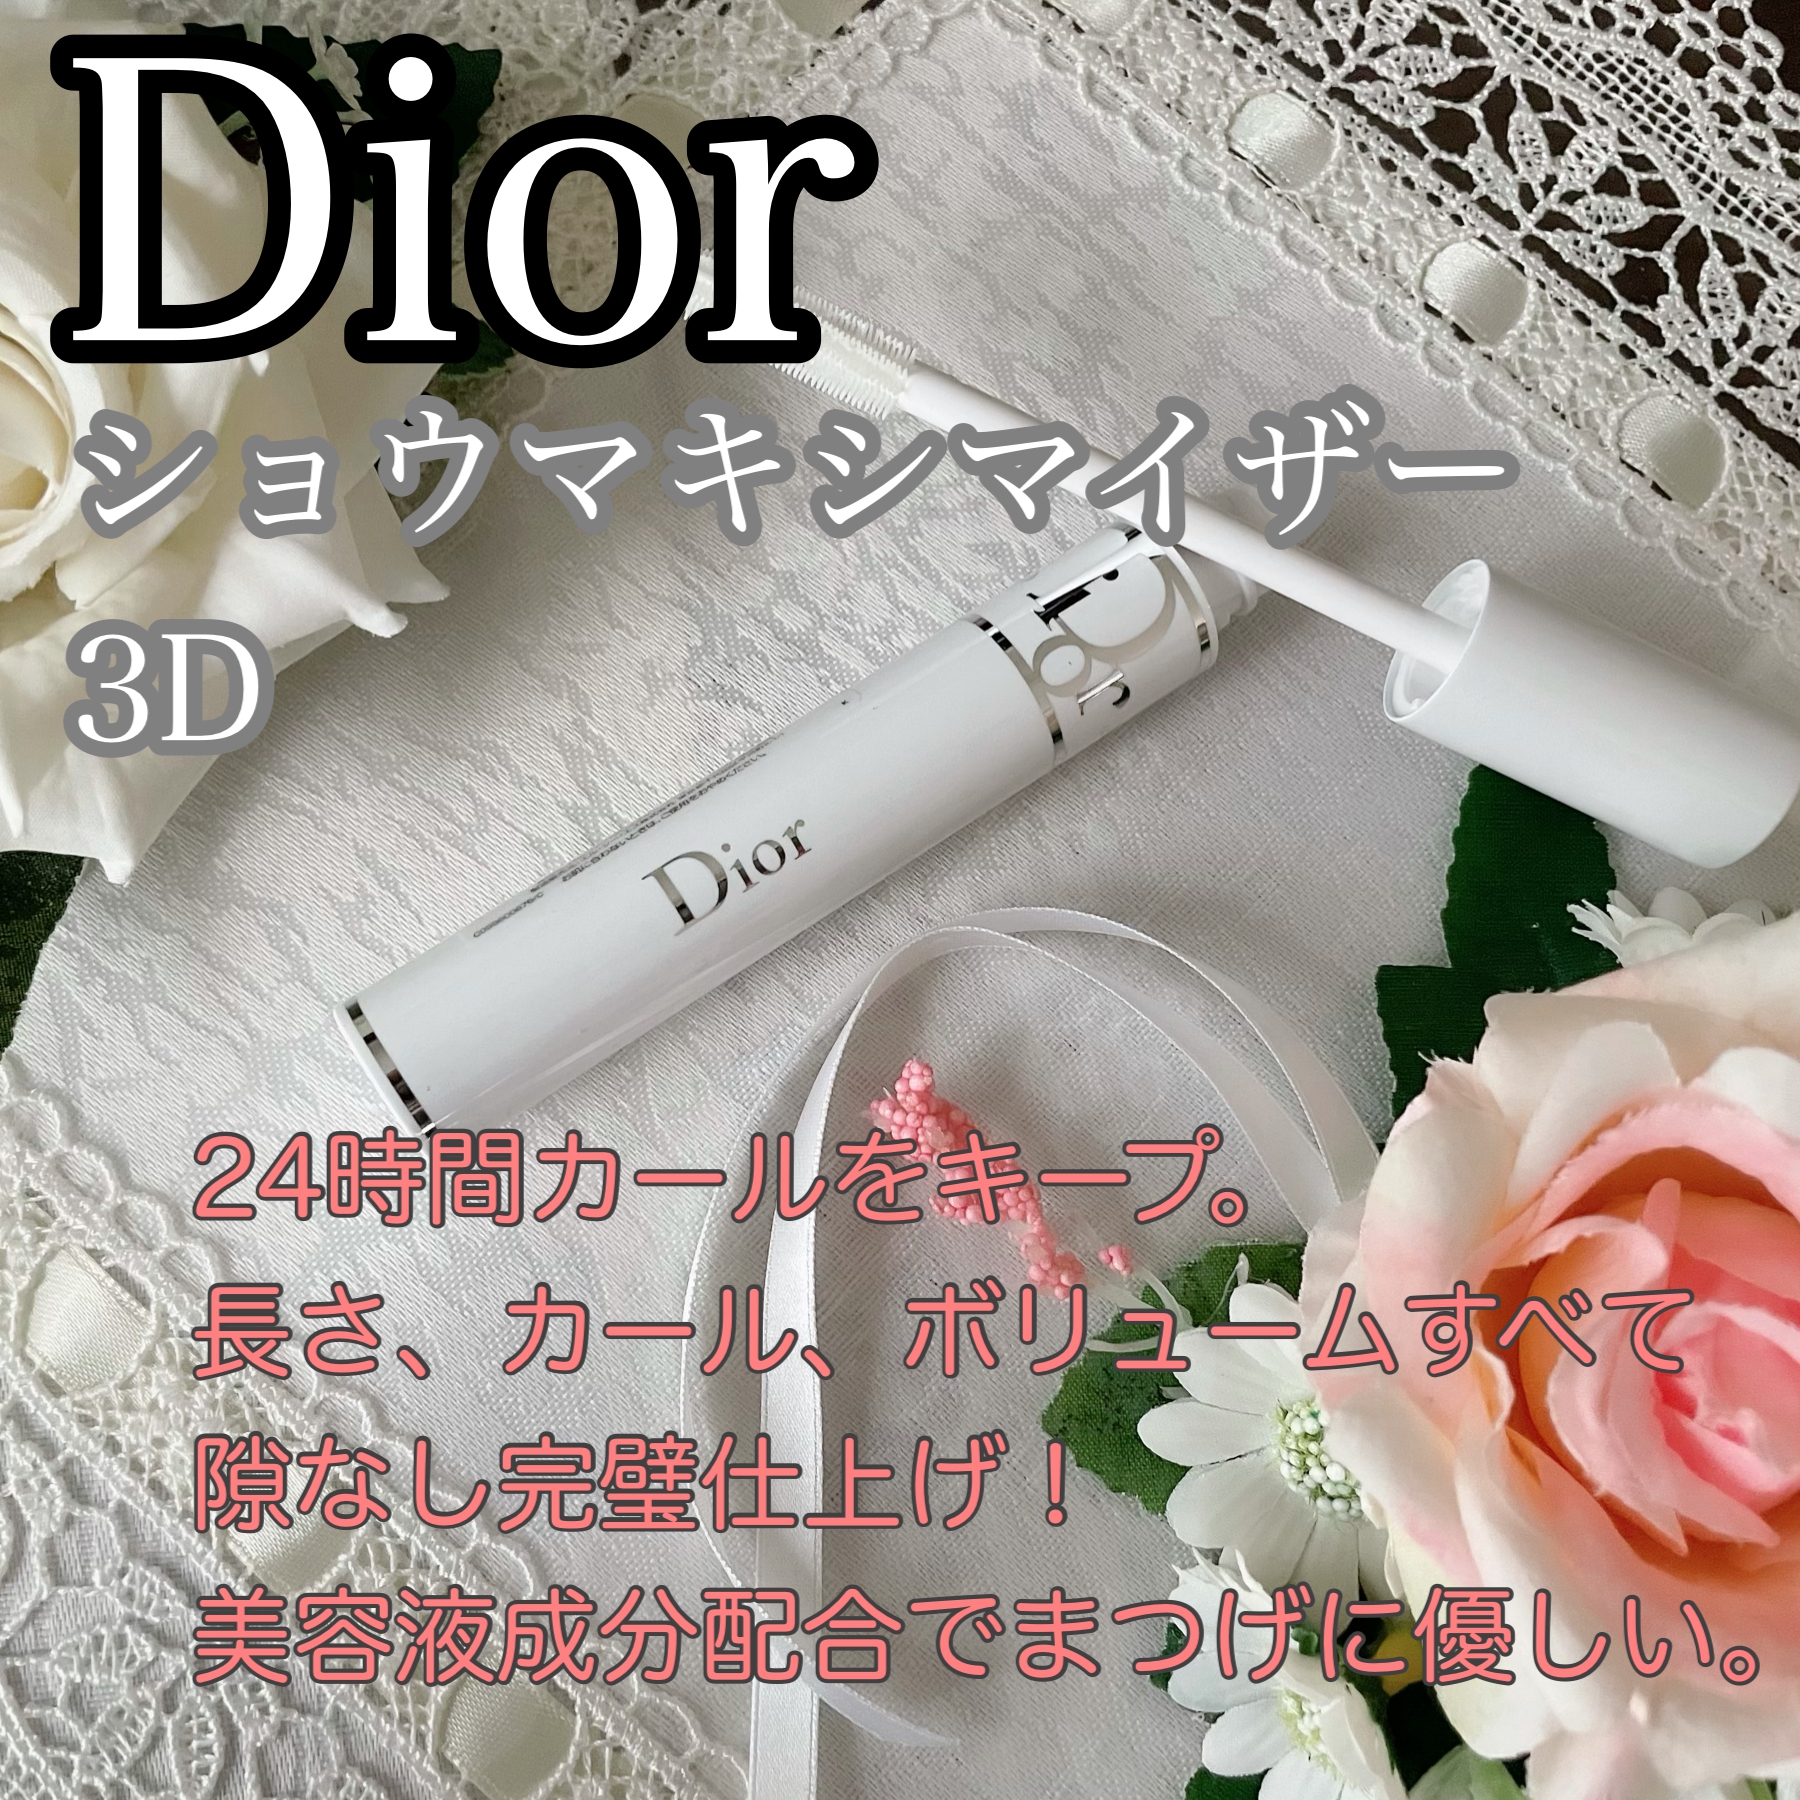 Dior(ディオール) ショウ マキシマイザー 3Dの良い点・メリットに関するかおきちさんの口コミ画像1